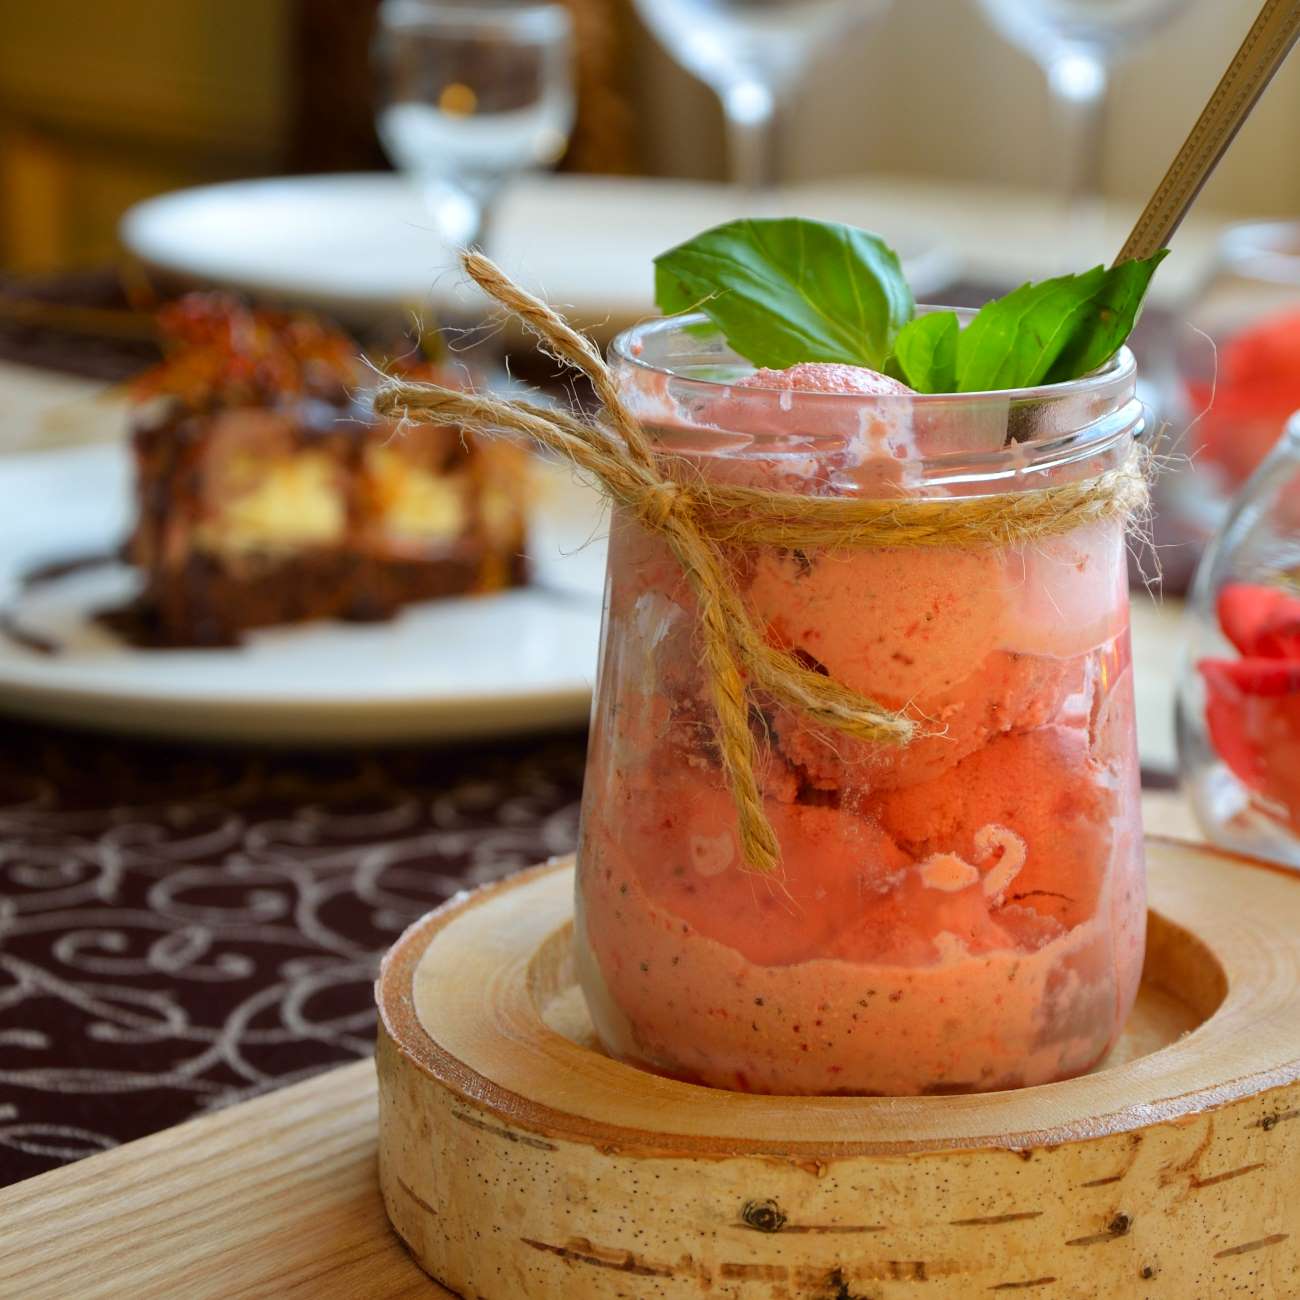 Erdbeer-Sorbet mit Basilikum wird in einem Weckglas auf einer Holzscheibe serviert.